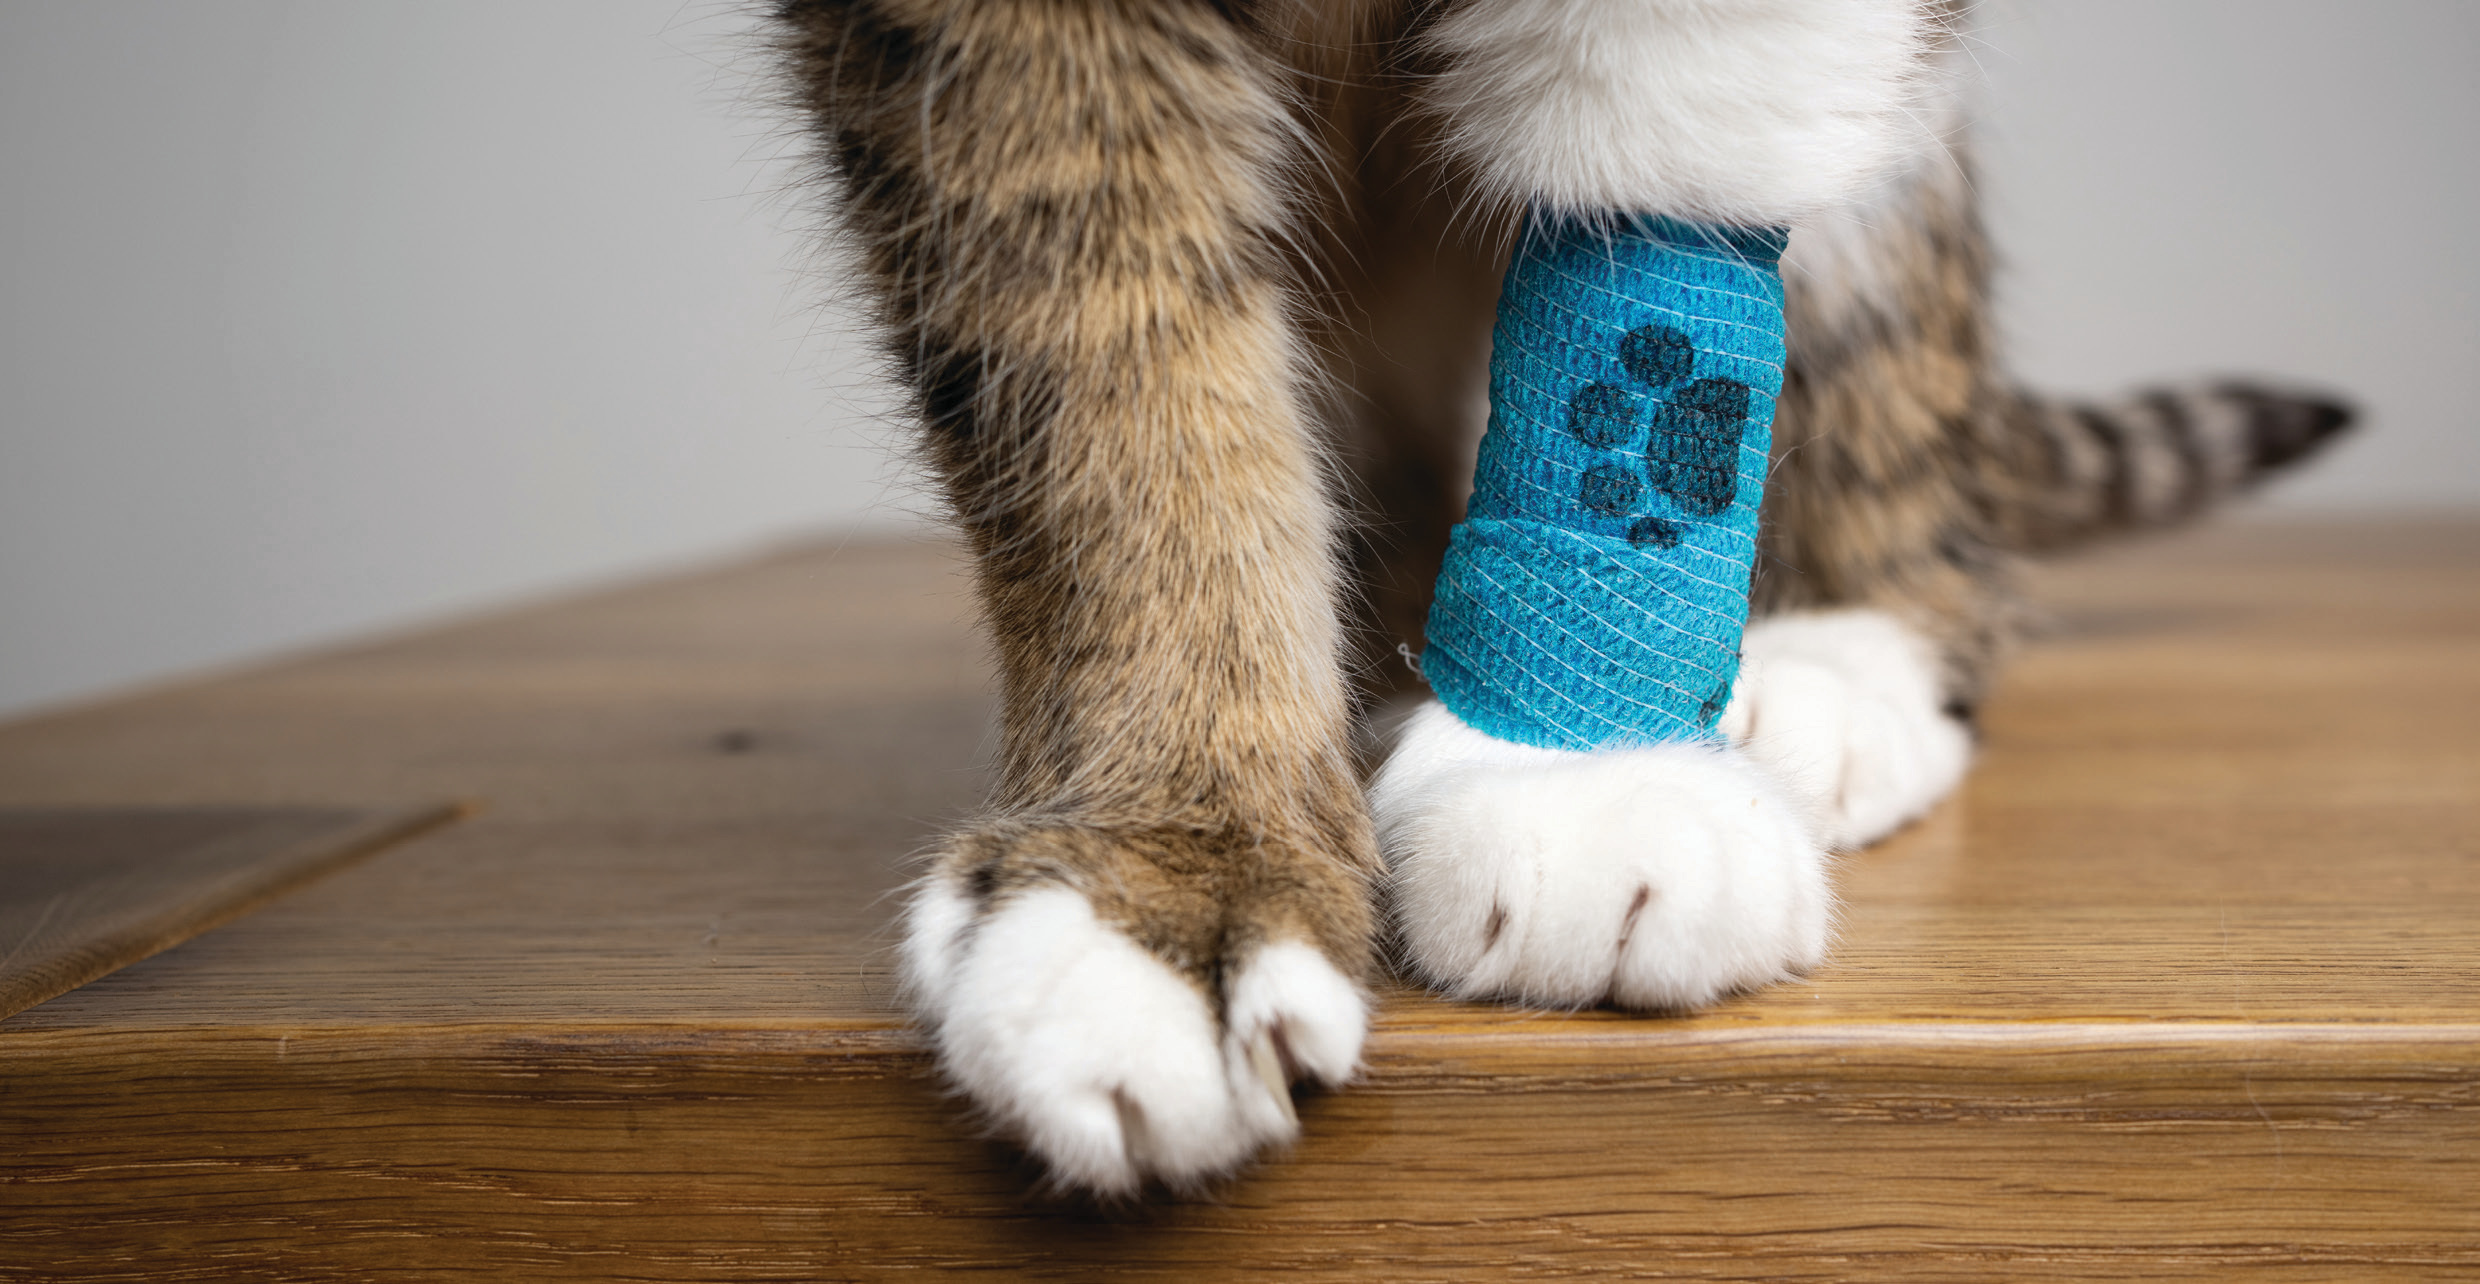 Cat with bandage